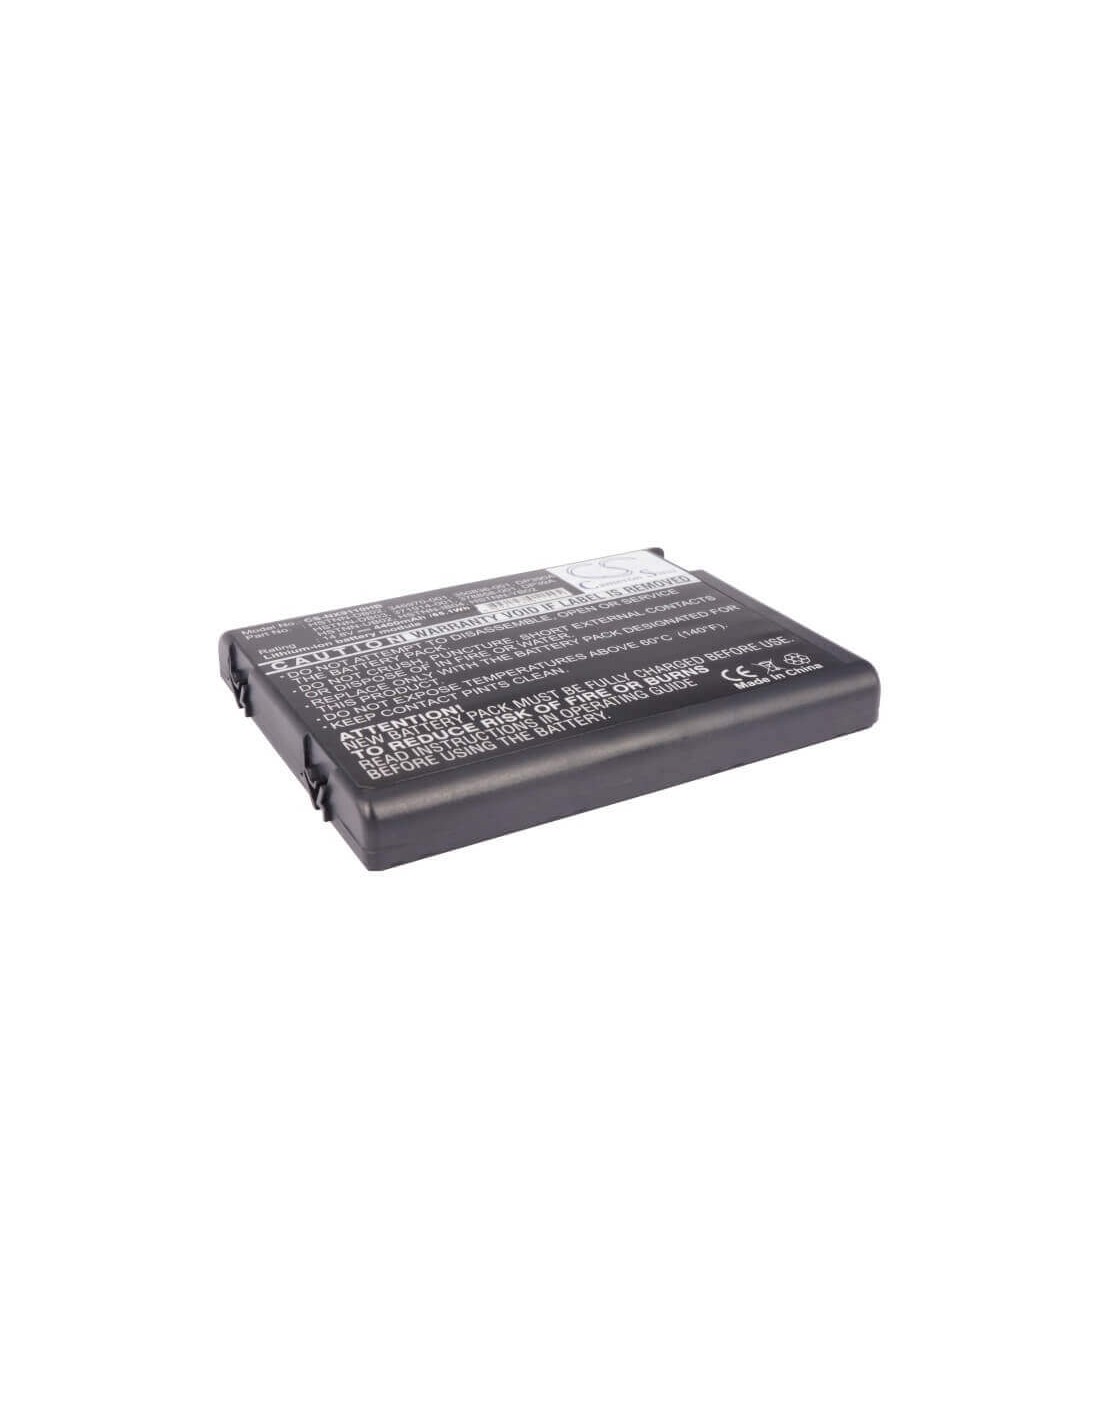 Black Battery for Compaq Presario R3002-dv192at, Presario R3019ap-dv816pa, Presario R3120us-dz353ur 14.8V, 4400mAh - 65.12Wh